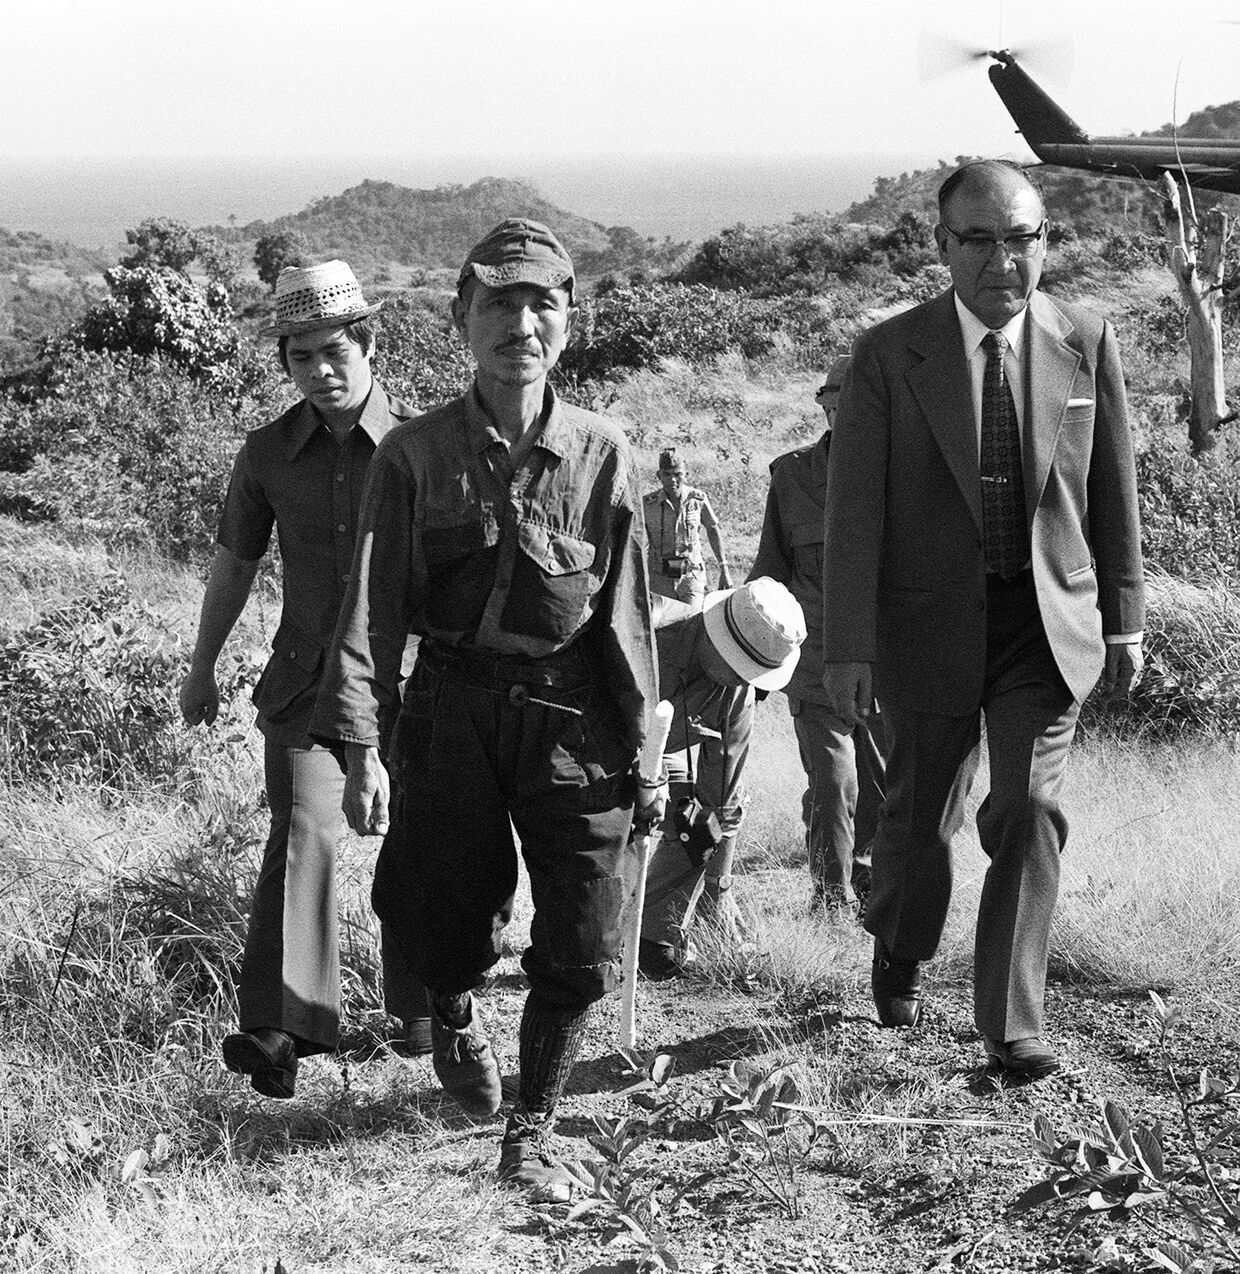 11 марта 1974 года. Японский лейтенант Хироо Онода покидает позиции на острове Лубанг